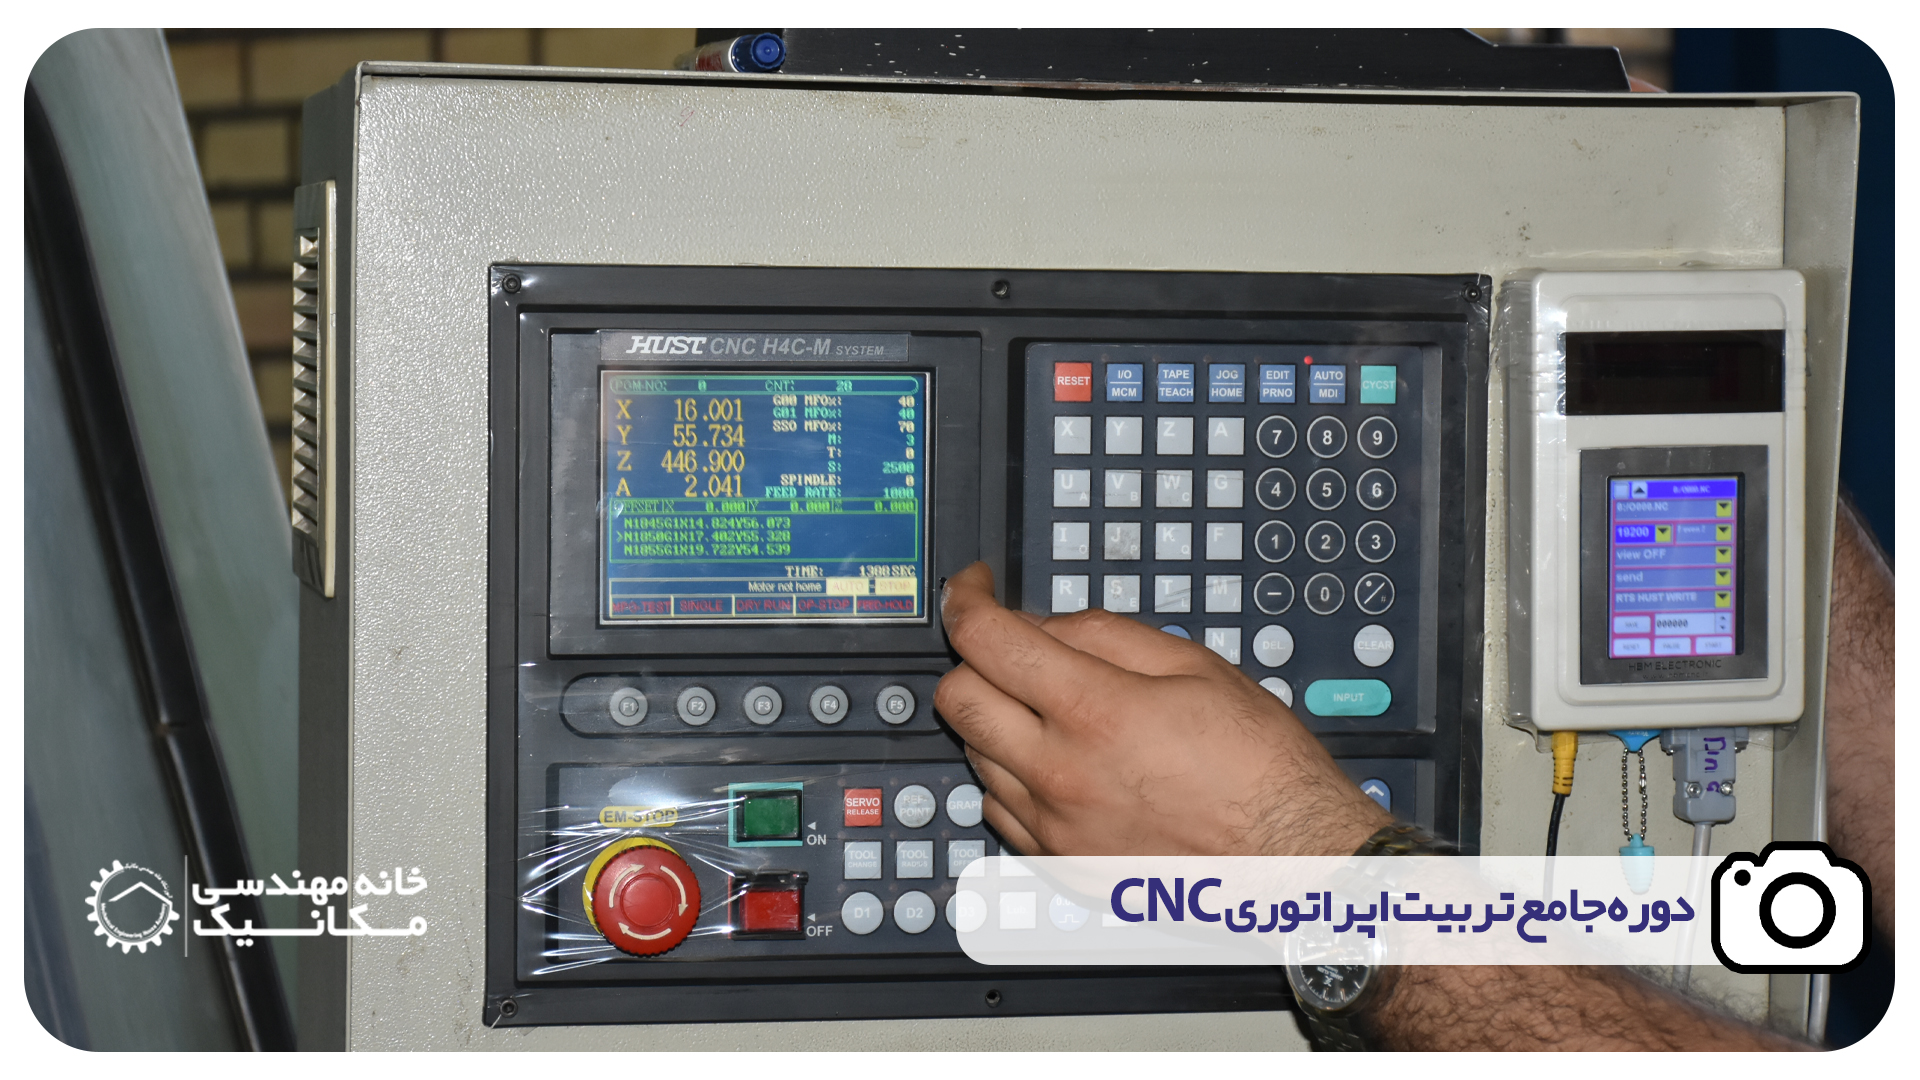 دوره جامع تربیت اپراتوری CNC در اهواز آموزشگاه خانه مهندسی مکانیک